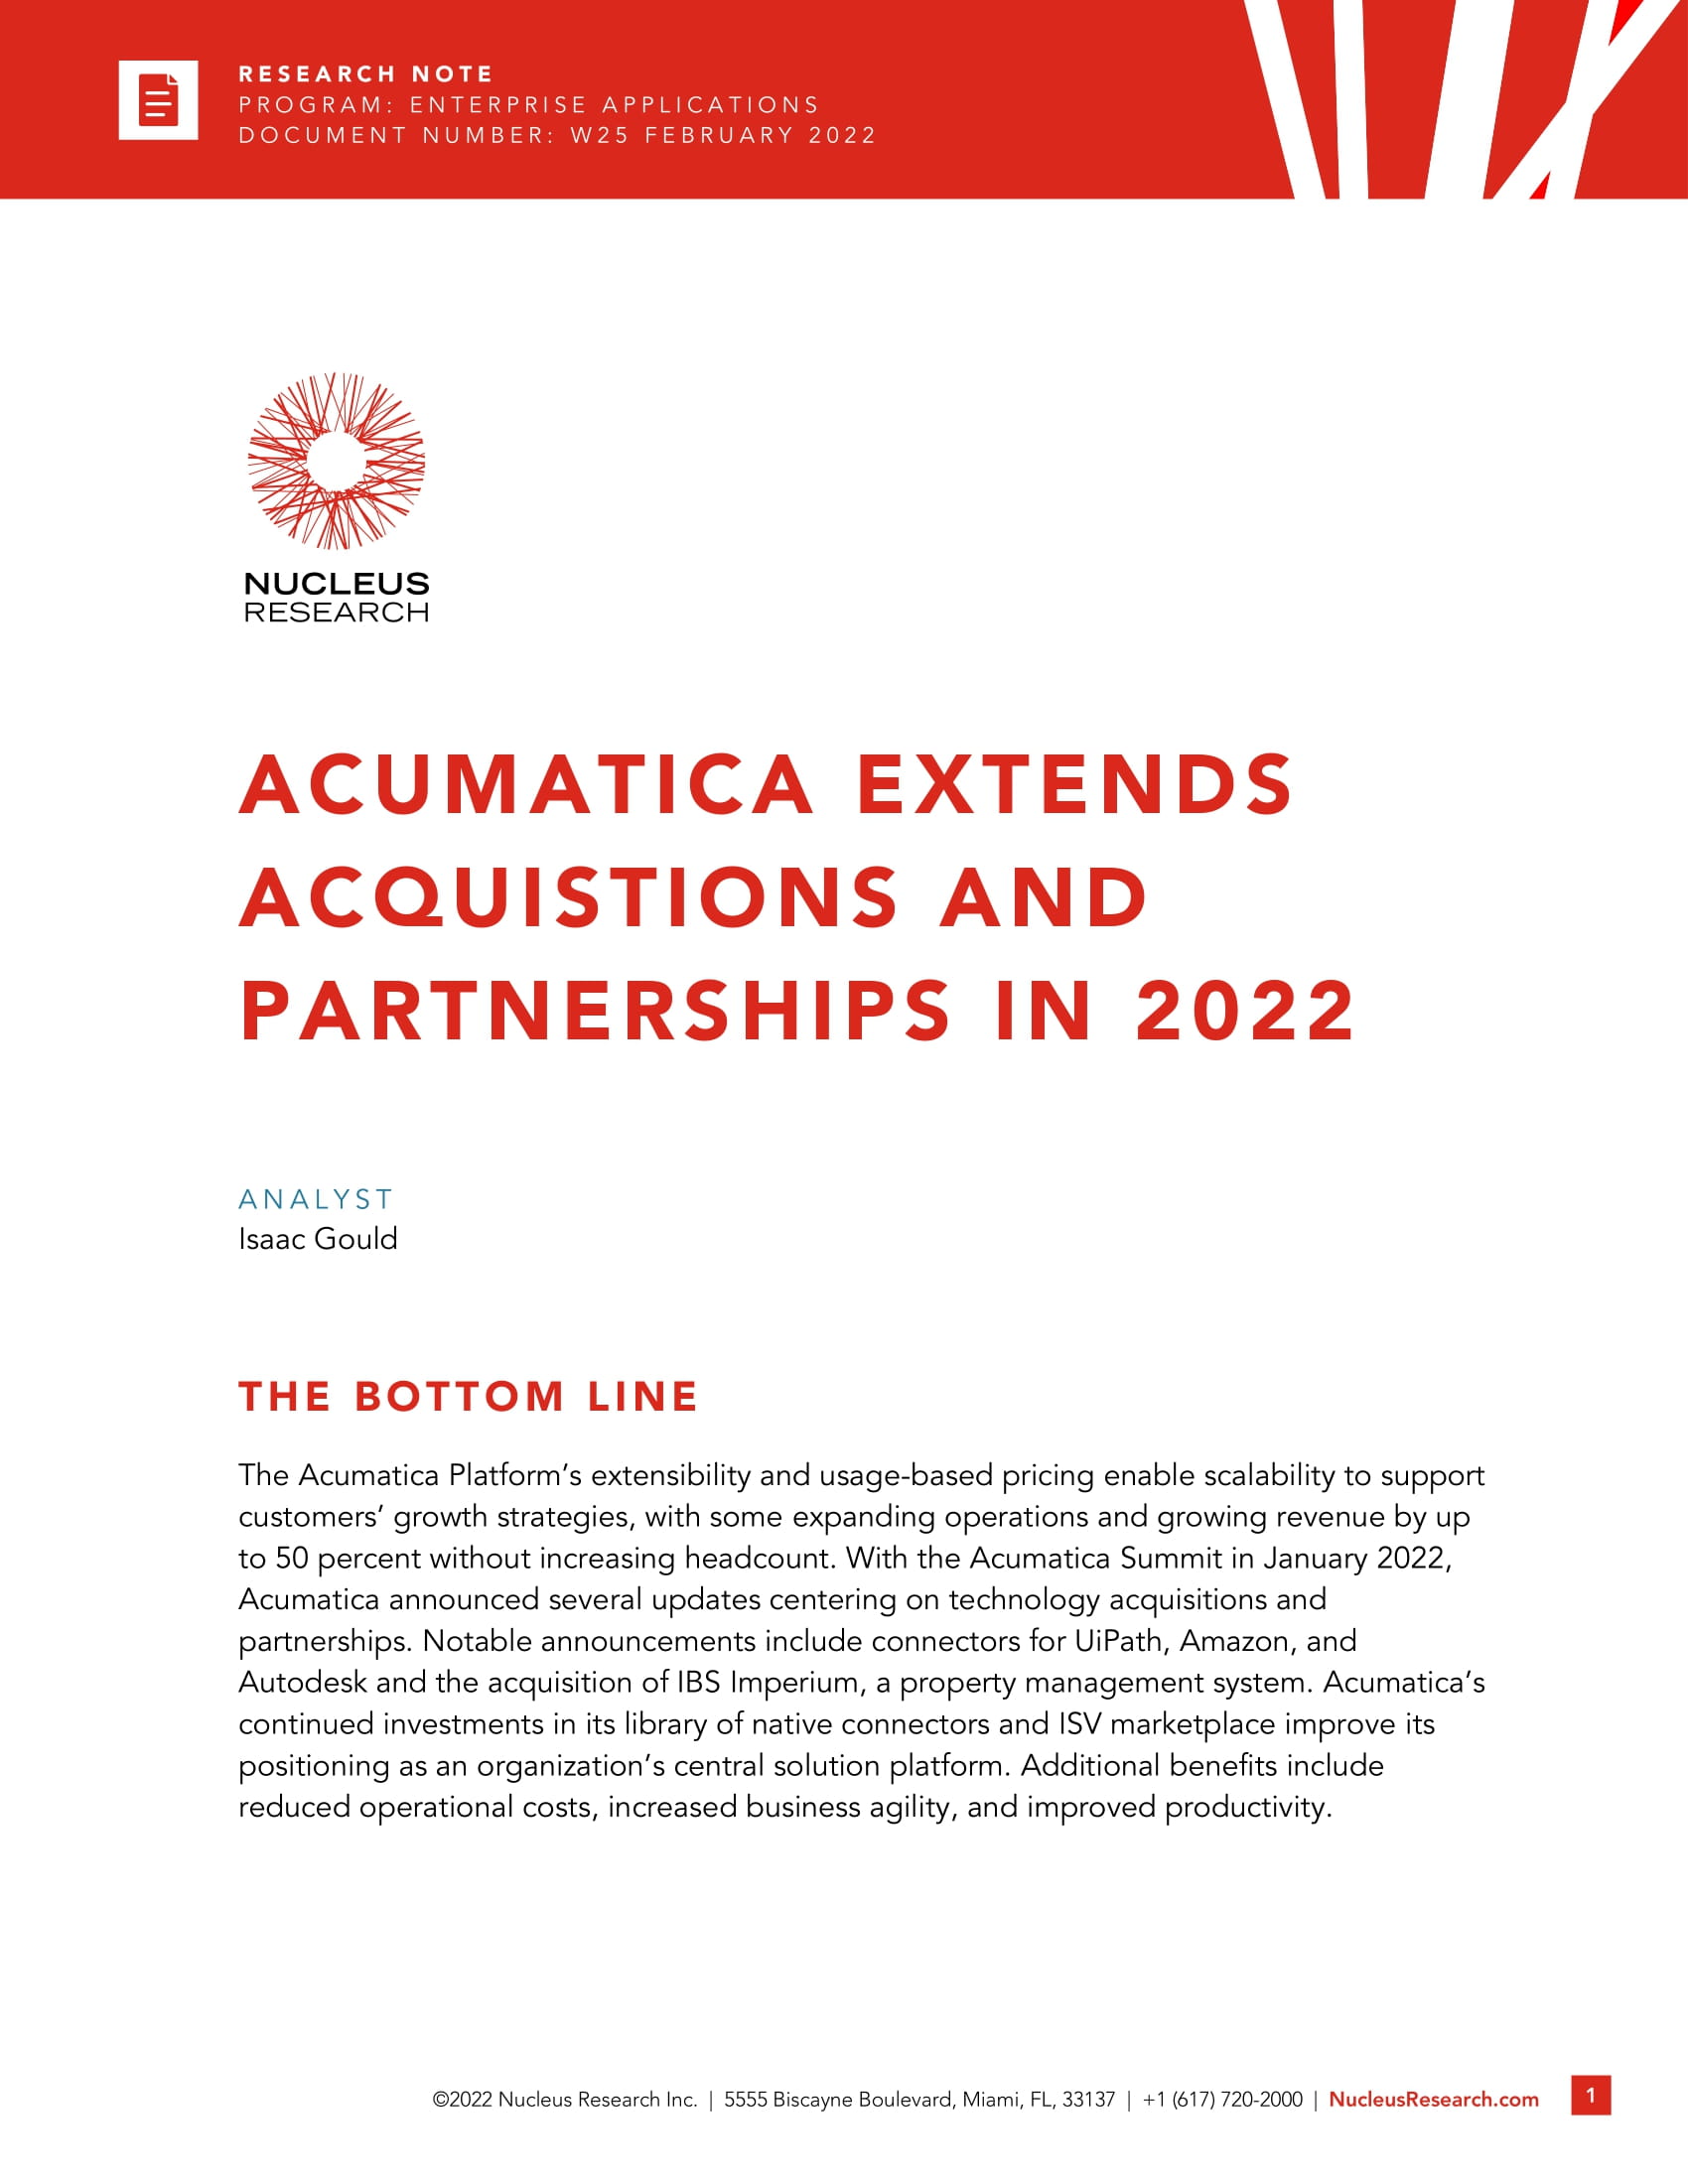 Tirez parti des nouvelles acquisitions et des nouveaux partenariats d’Acumatica 